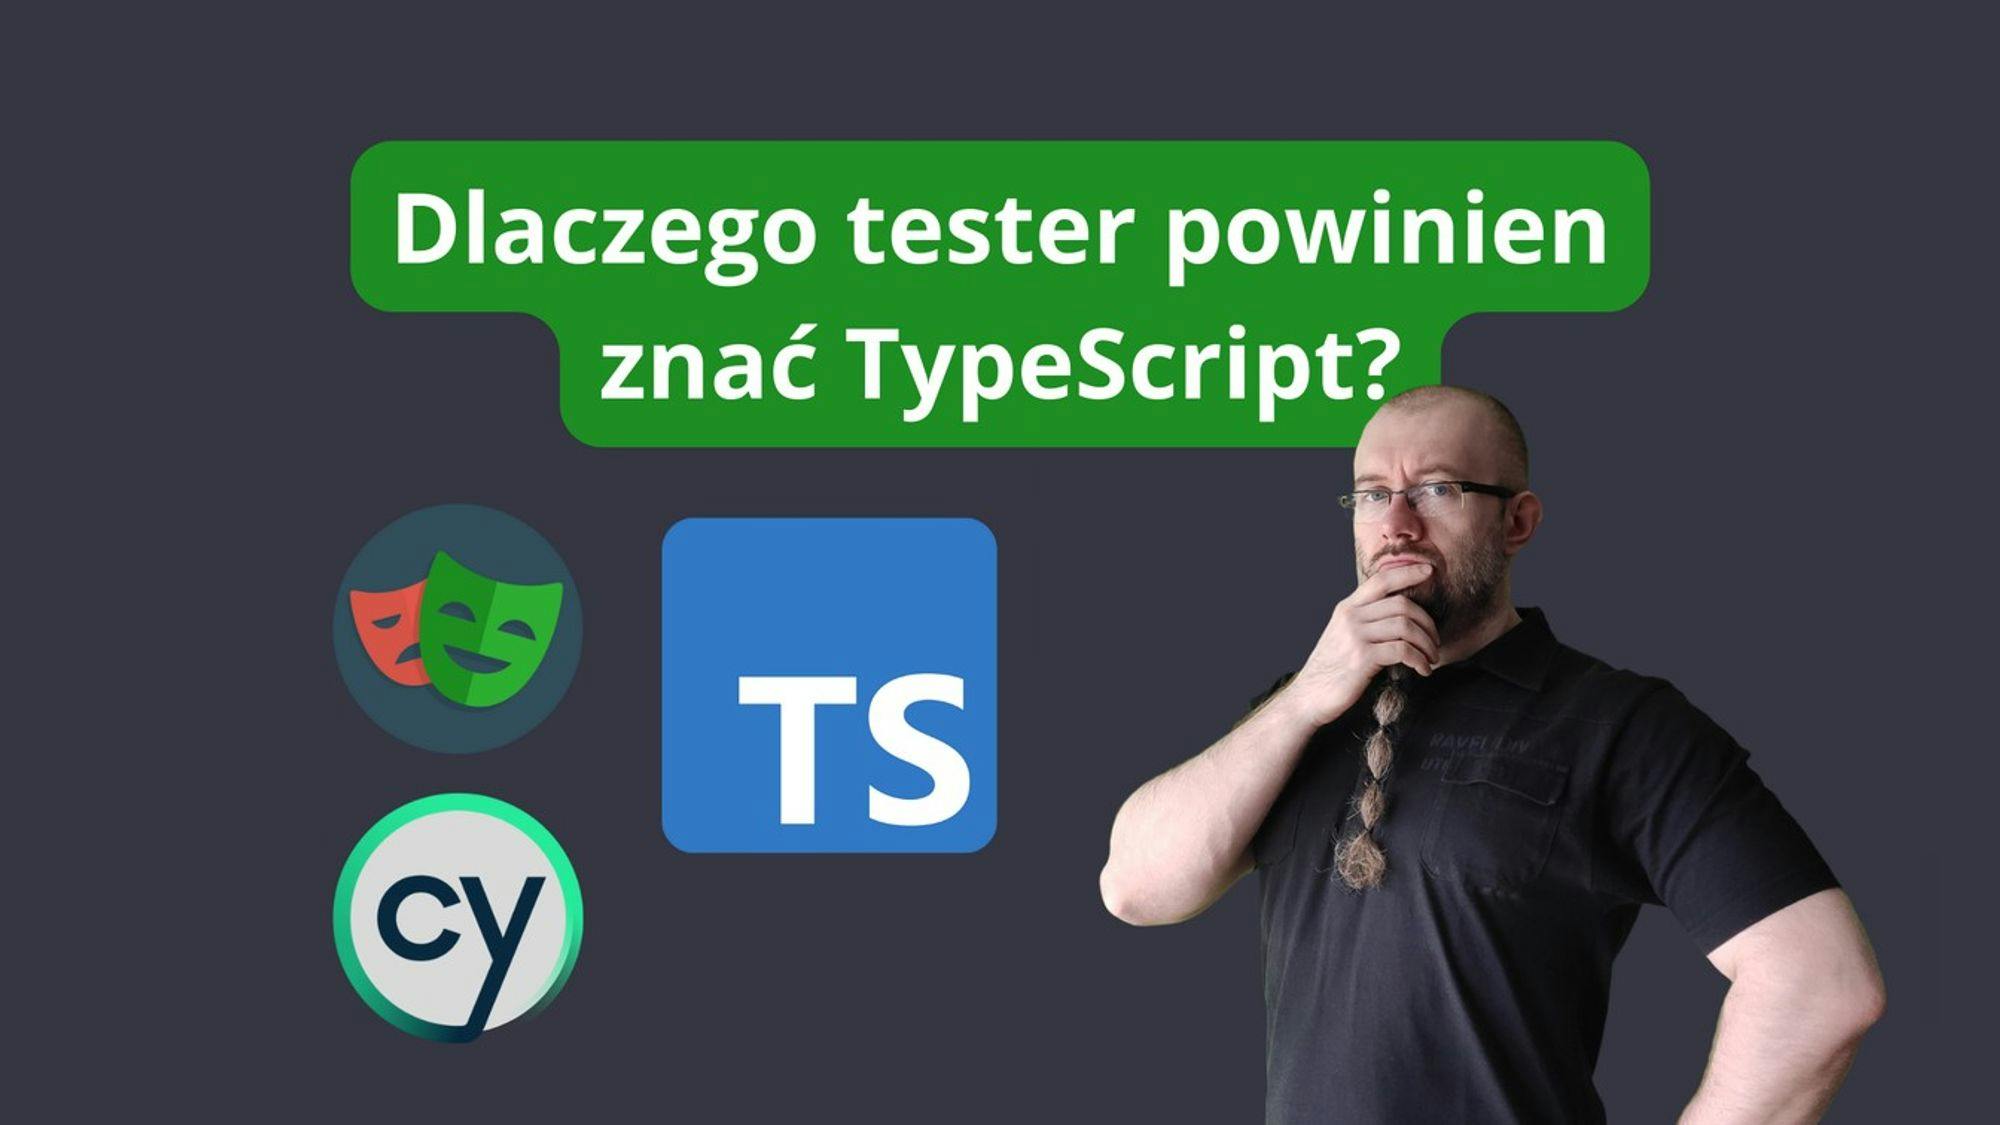 Dlaczego tester powinien znać TypeScript?